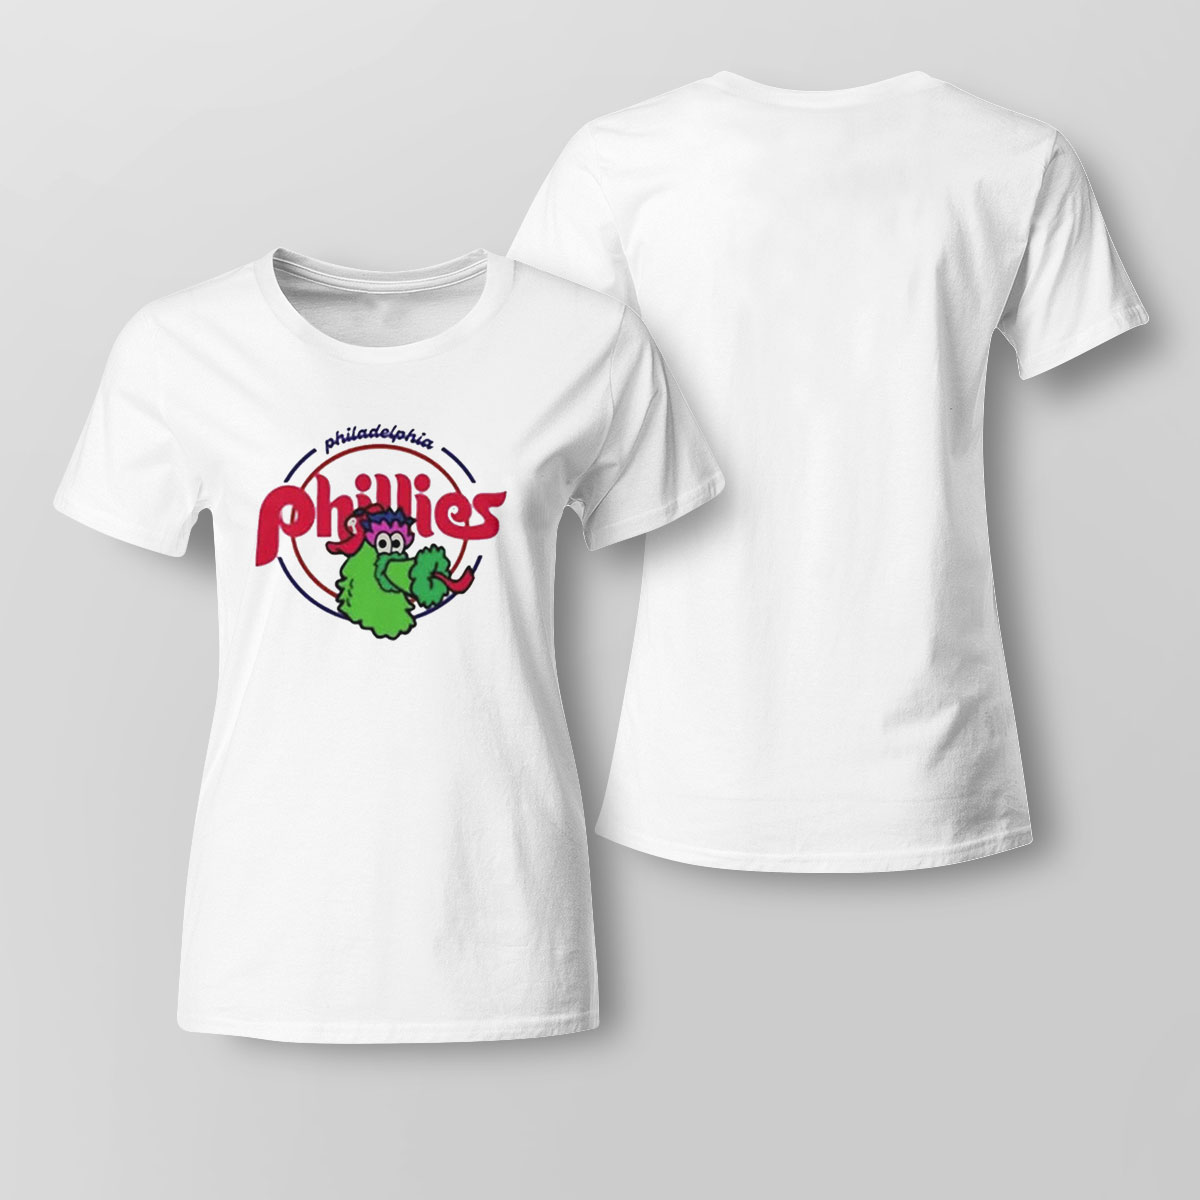 Phanatic Philadelphia Phillies Baseball Best T-Shirt